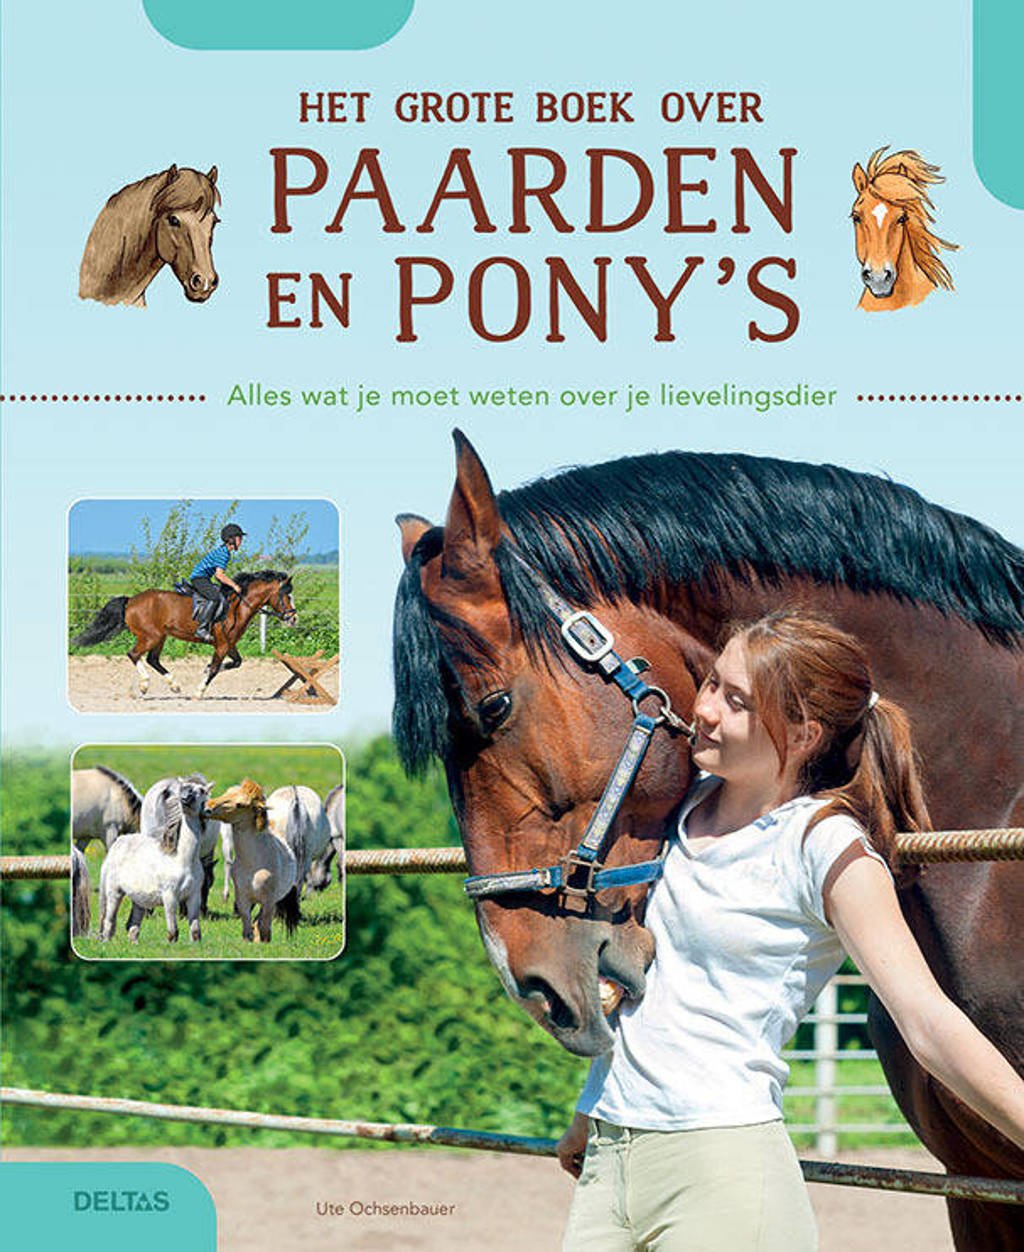 Eik oorsprong Lunch Ute OCHSENBAUER Het grote boek over paarden en pony's | wehkamp